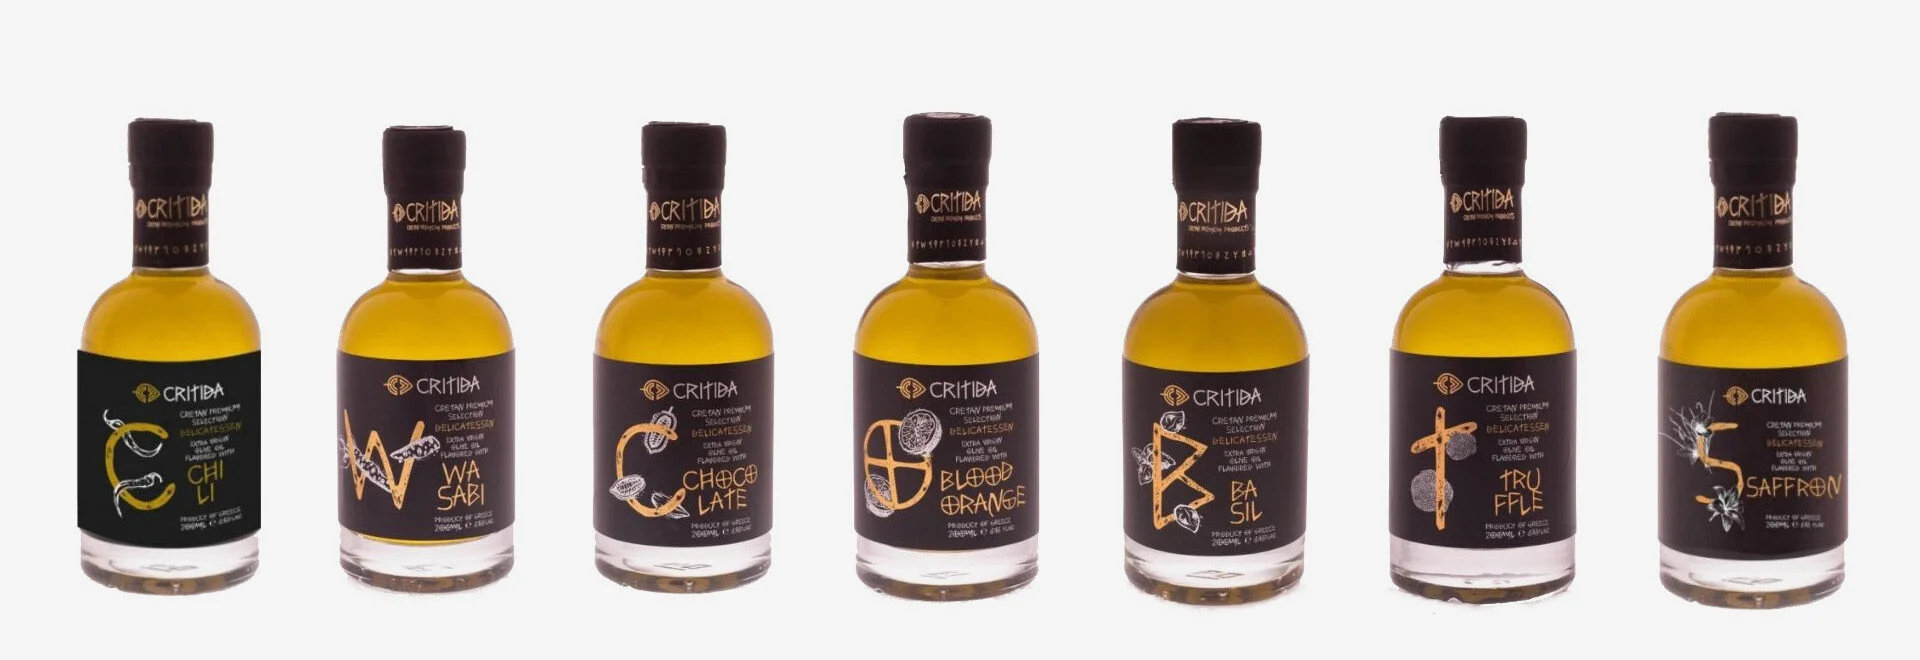 Unser aromatisiertes Natives Olivenöl Extra (EVOO) Premium-Produkte von der griechischen Insel Kreta